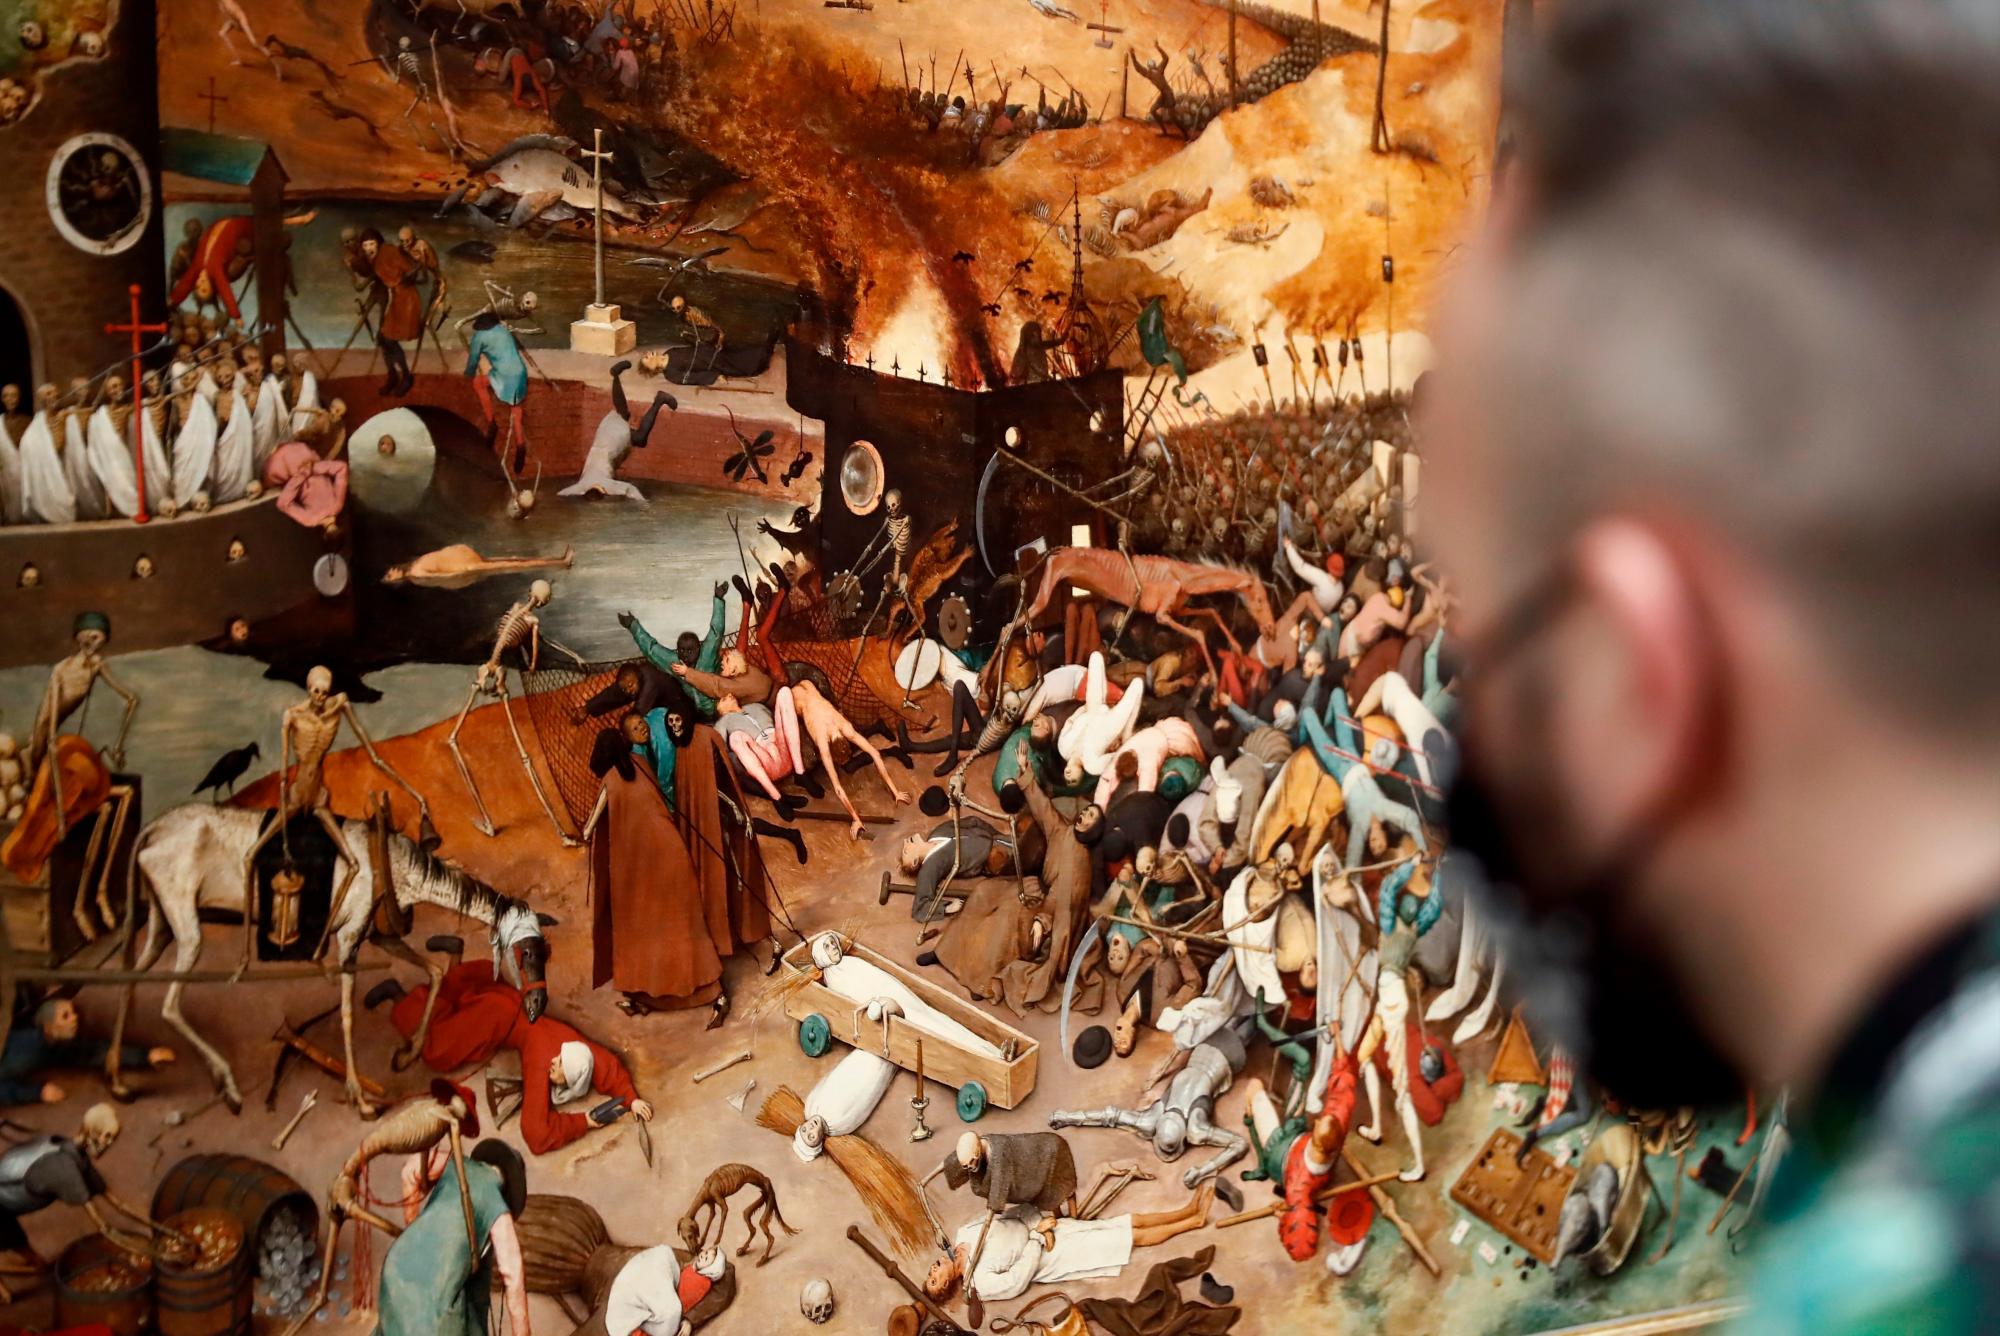 Detalle de la obra “El triunfo de la Muerte” del artista flamenco Pieter Brueghel el Viejo expuesto en el Museo del Prado en Madrid. 